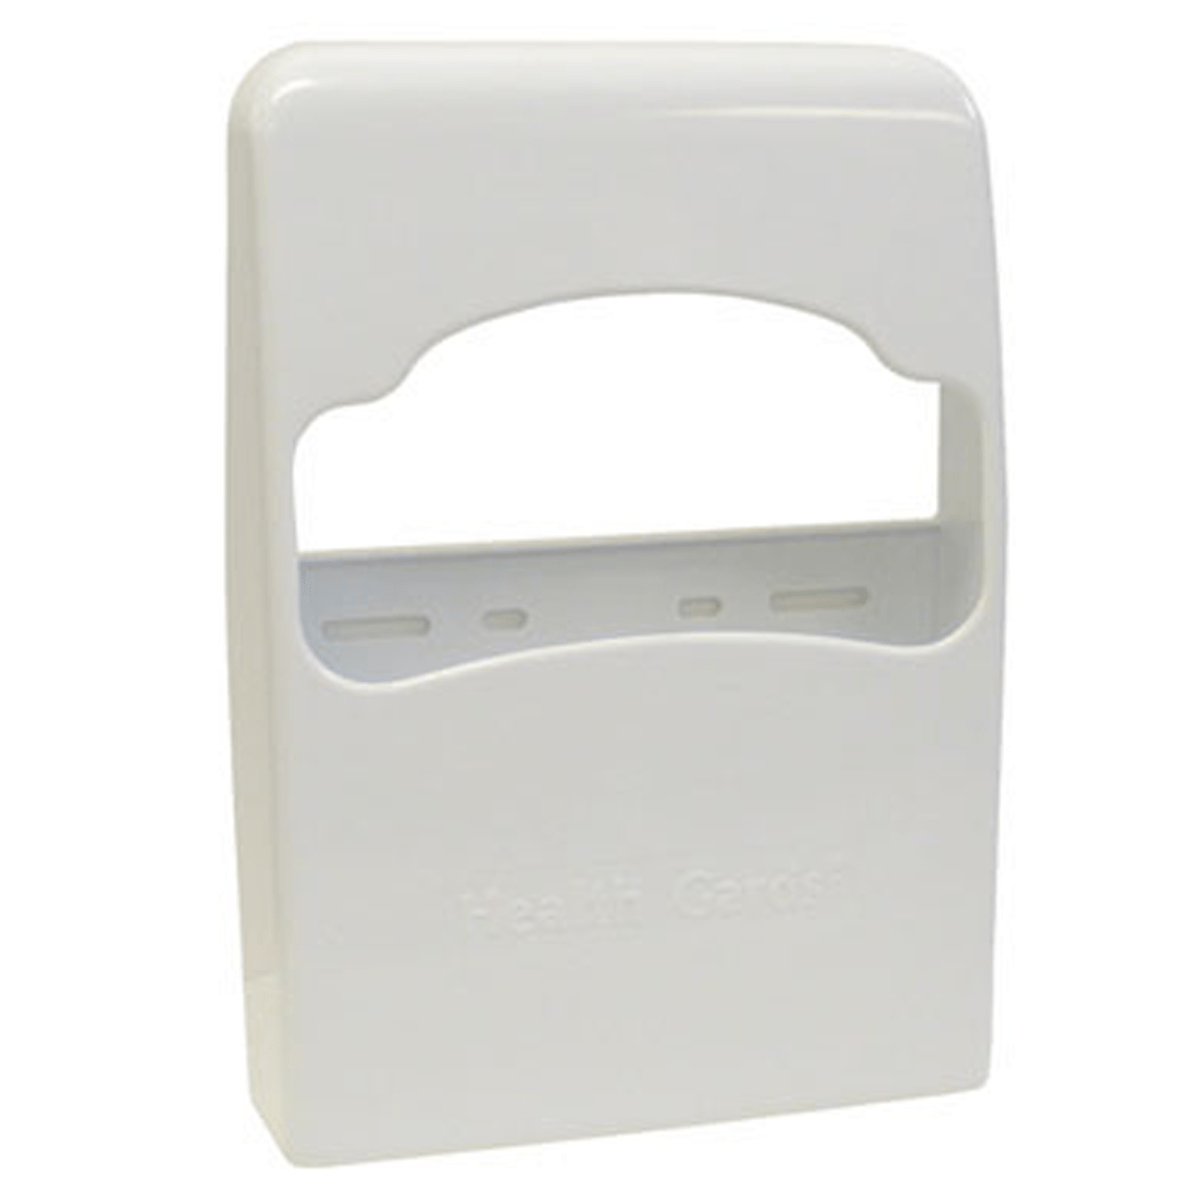 Quarter-Fold Toilet Seat Cover Dispenser